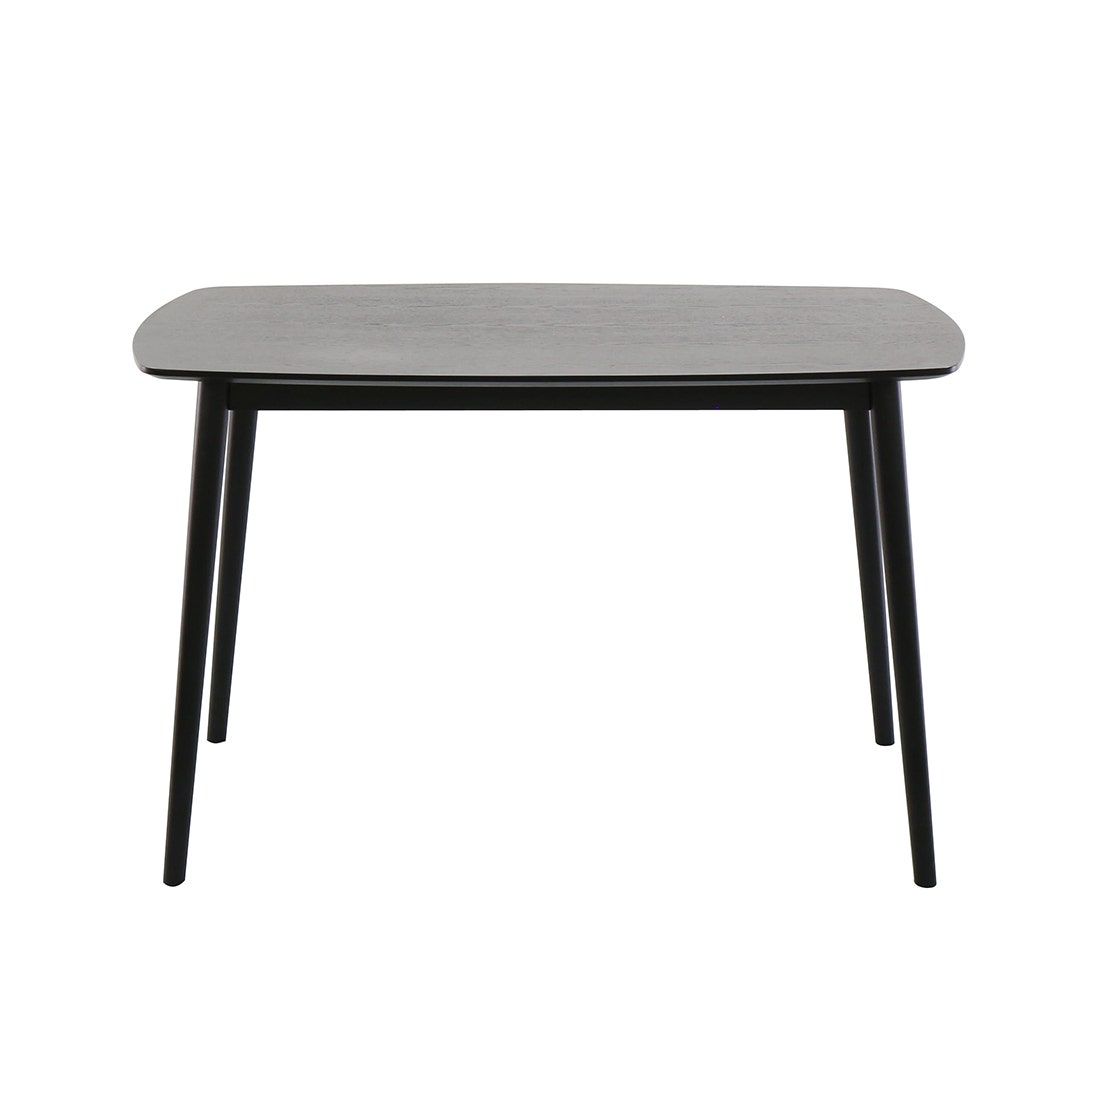 โต๊ะทานอาหาร โต๊ะอาหารไม้ล้วน รุ่น Inter สีสีดำ-SB Design Square